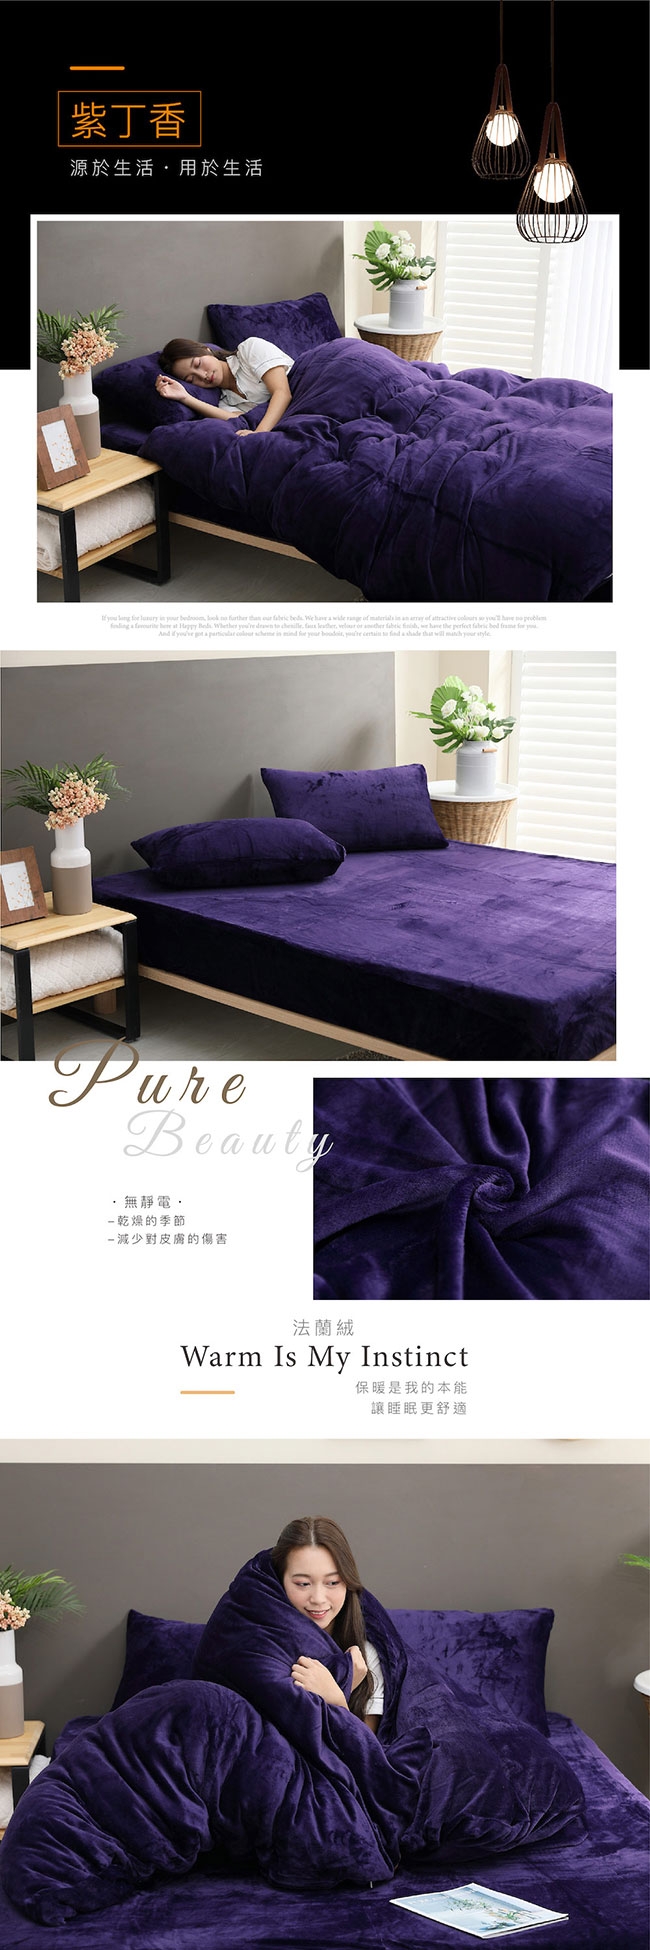 岱思夢 素色法蘭絨兩用毯被套 雙人6x7尺 玩色主義紫丁香